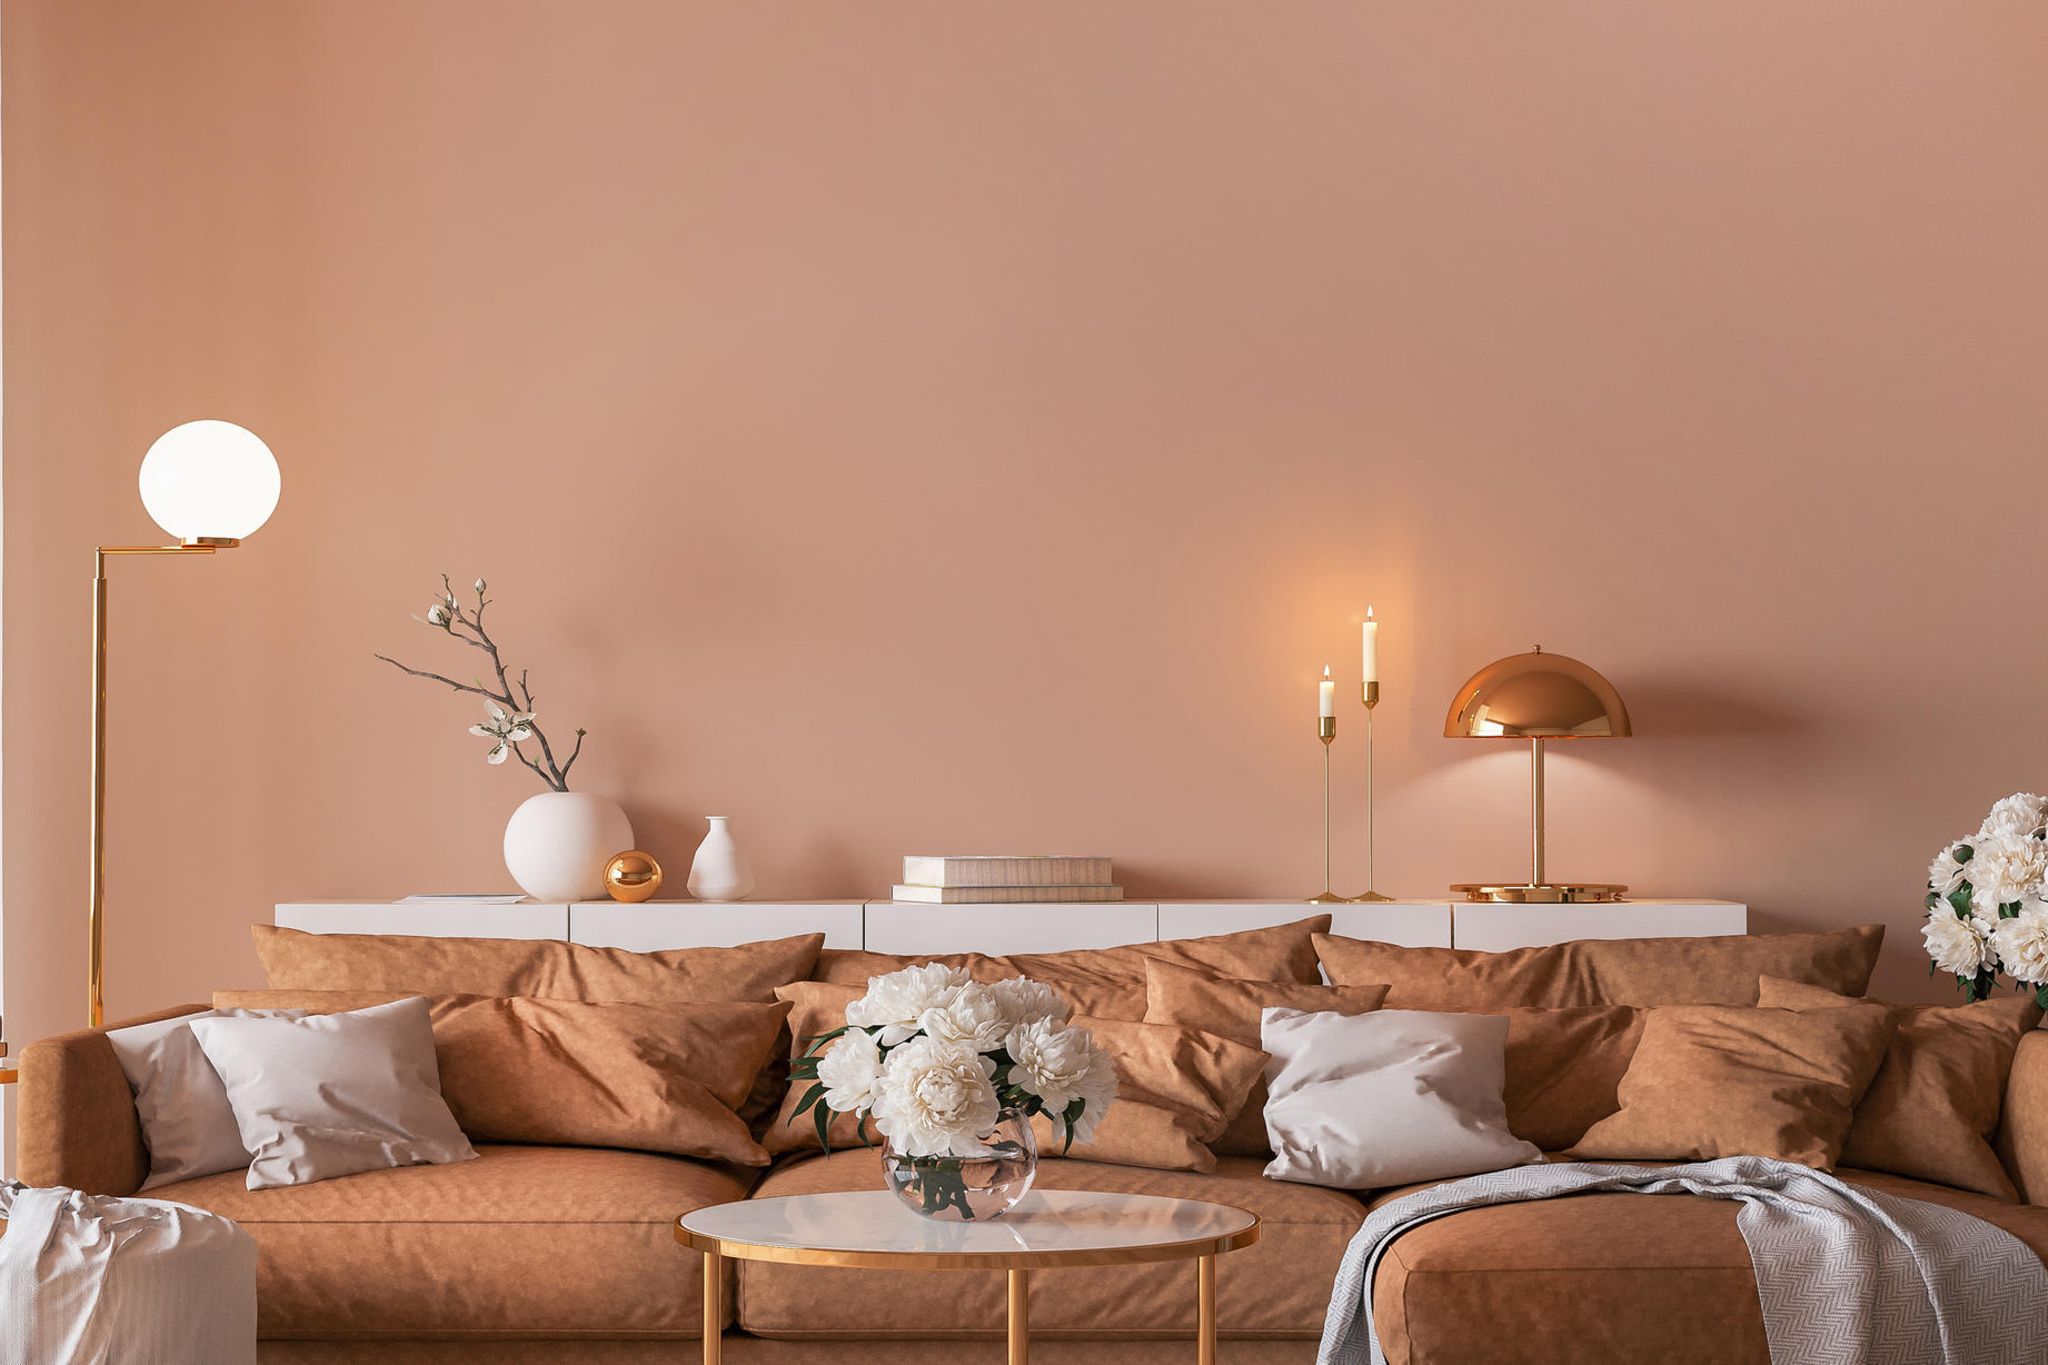 Wandgestaltung im Wohnzimmer – die besten Ideen   BRIGITTE.de